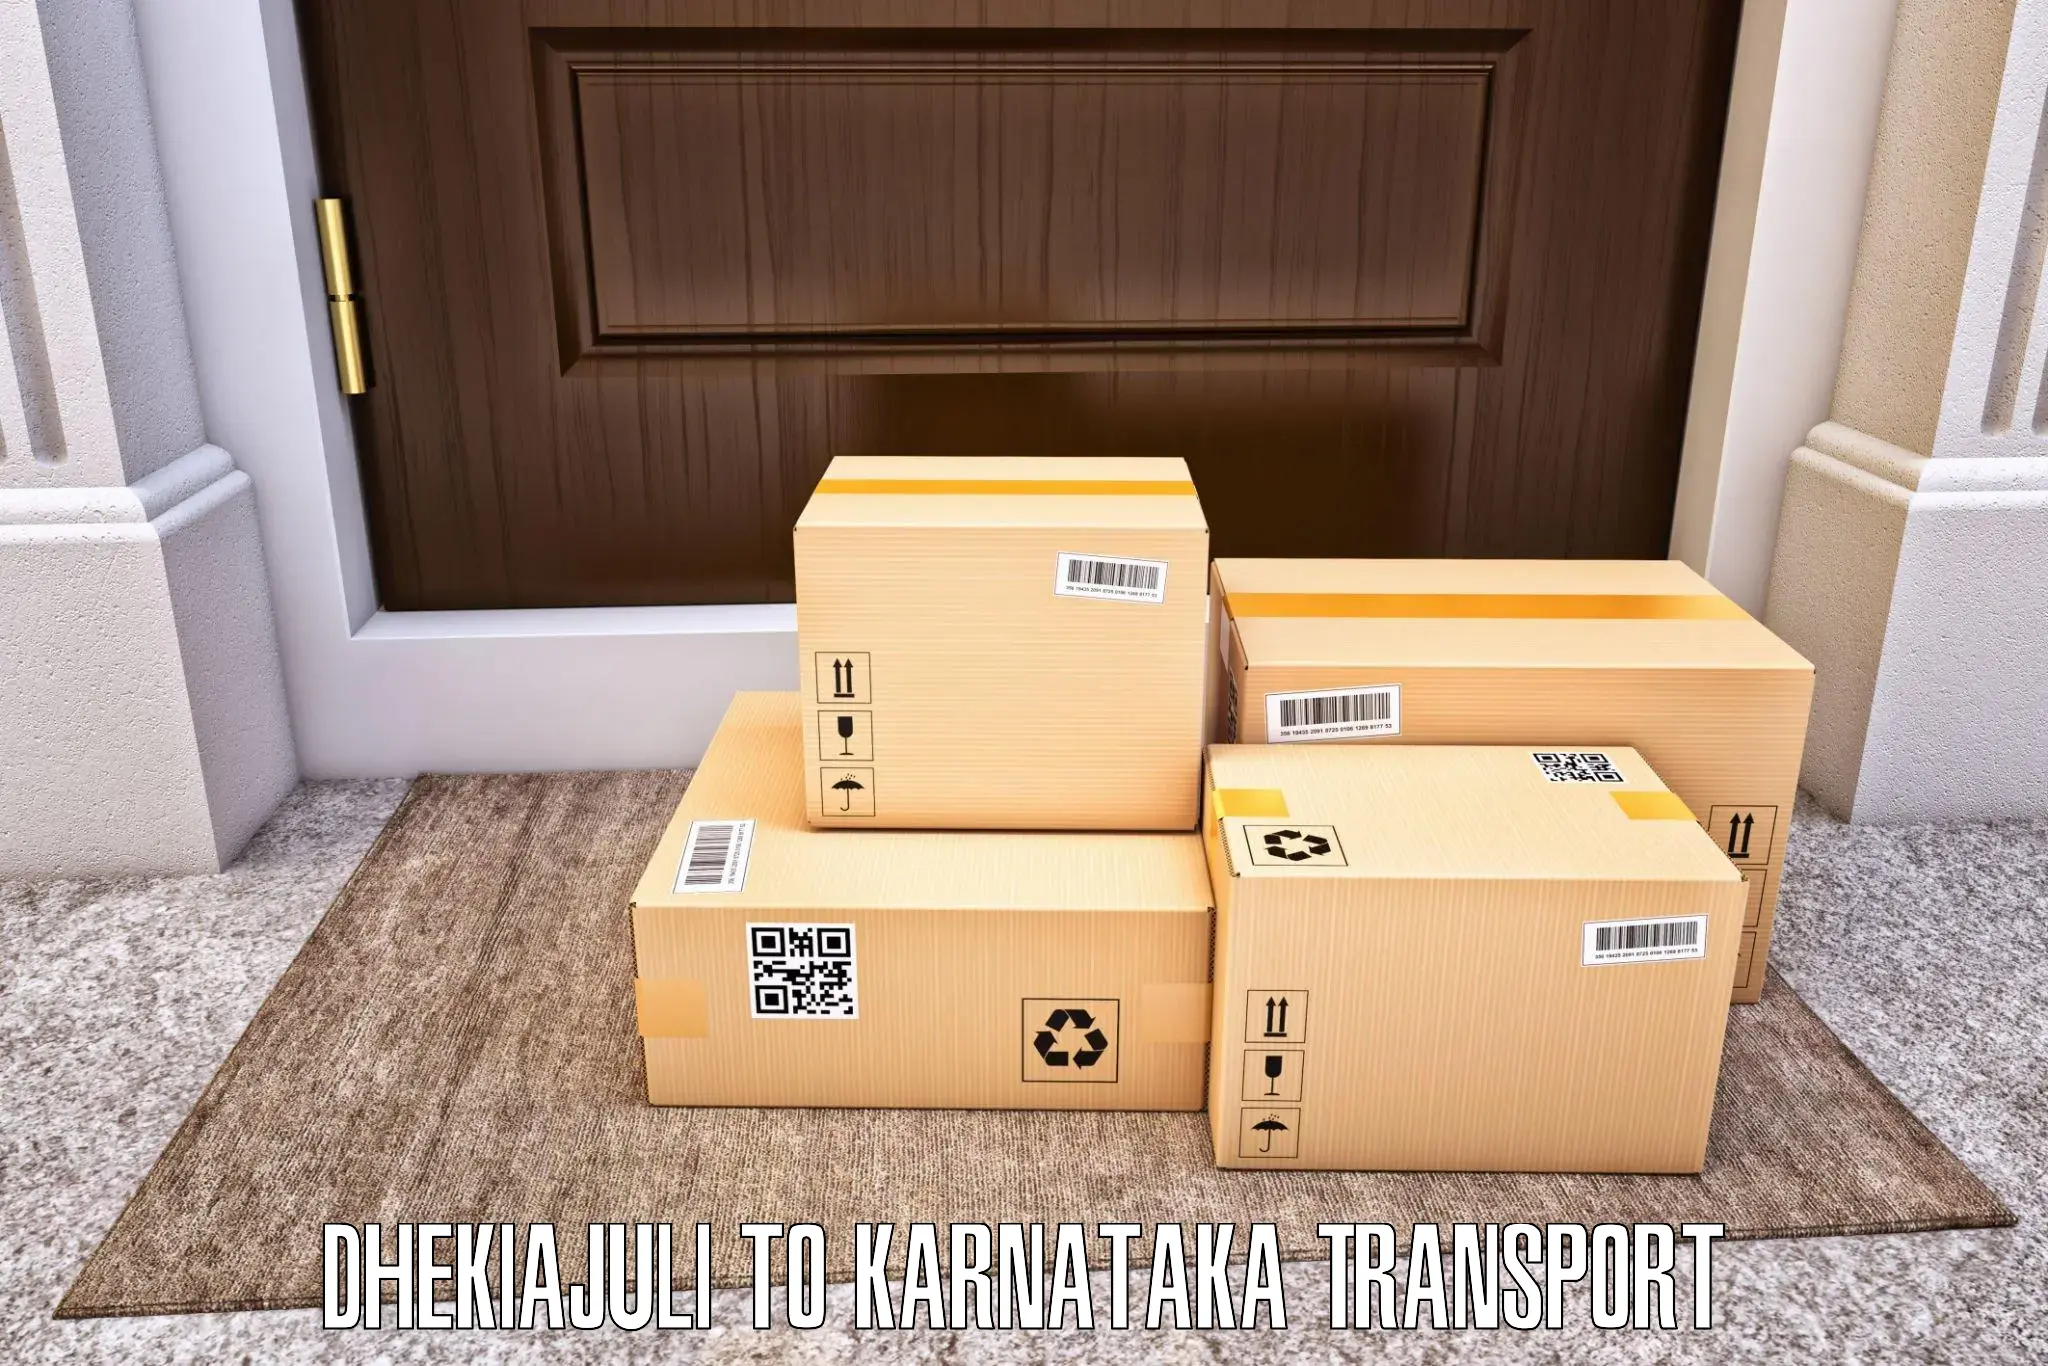 Commercial transport service Dhekiajuli to Basavakalyan